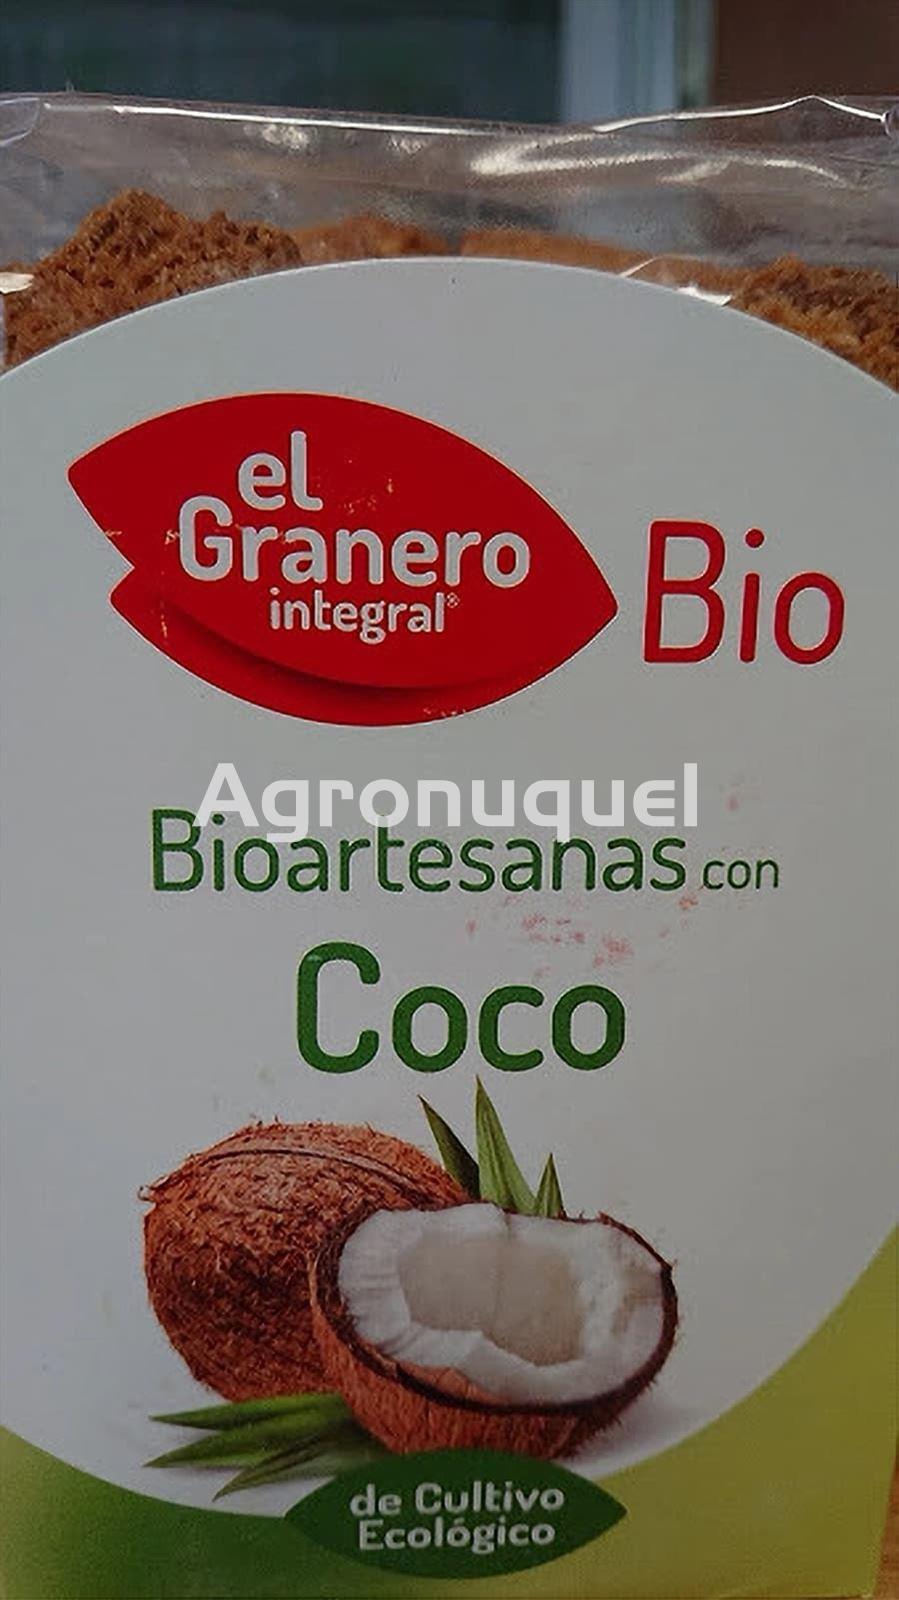 Galletas Bioartesanas de Coco - - Ecológicas - Imagen 1